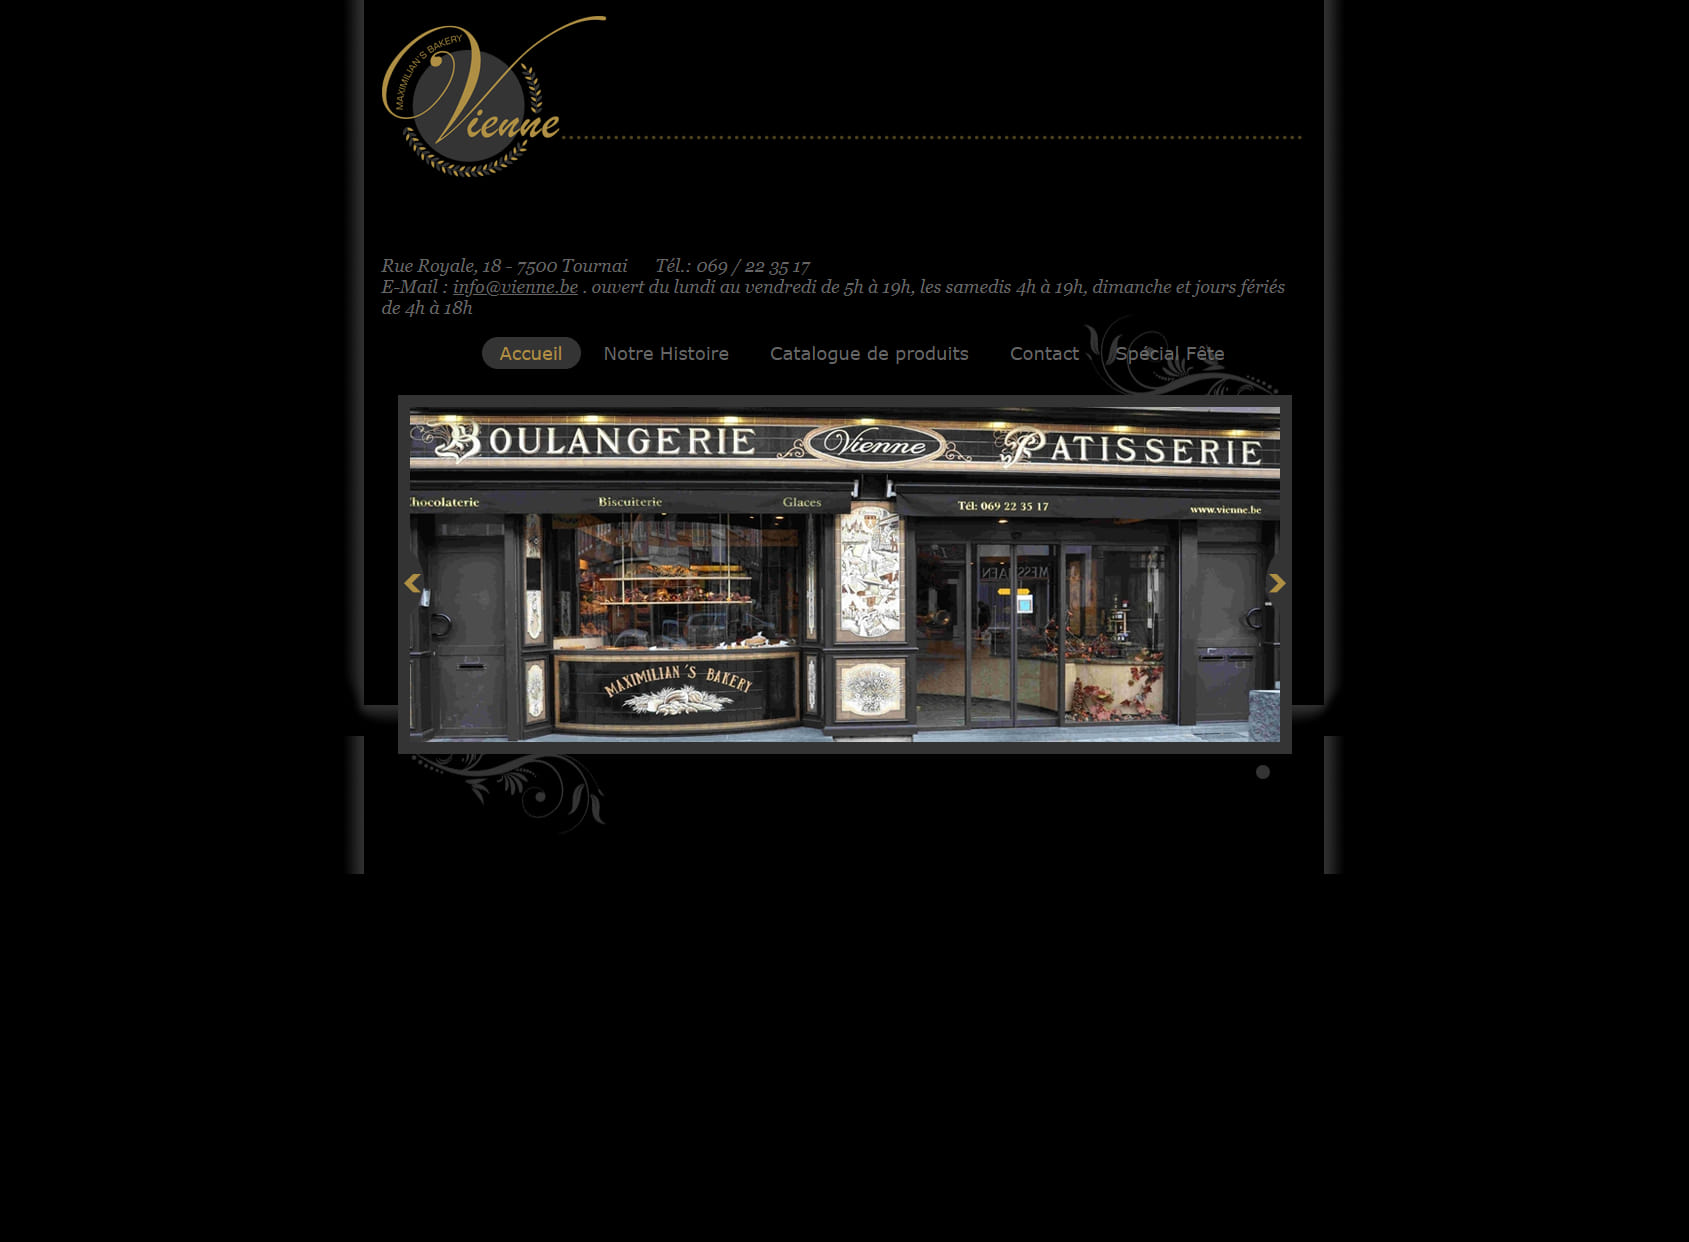 Boulangerie Vienne